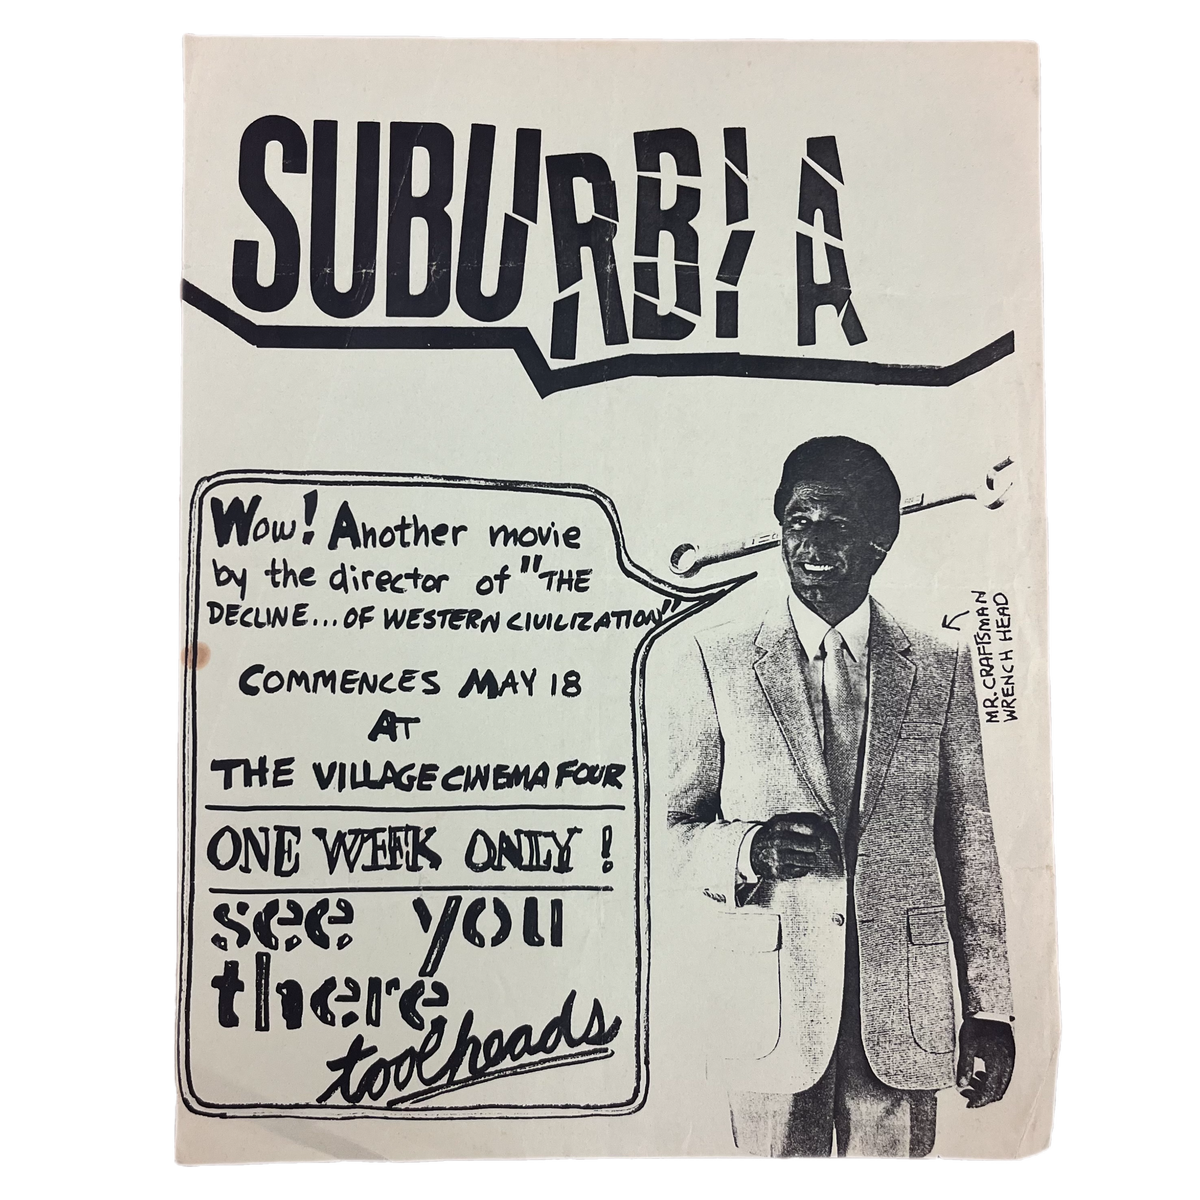 Vintage Suburbia &quot;The Village Cinema Four&quot; Movie Flyer